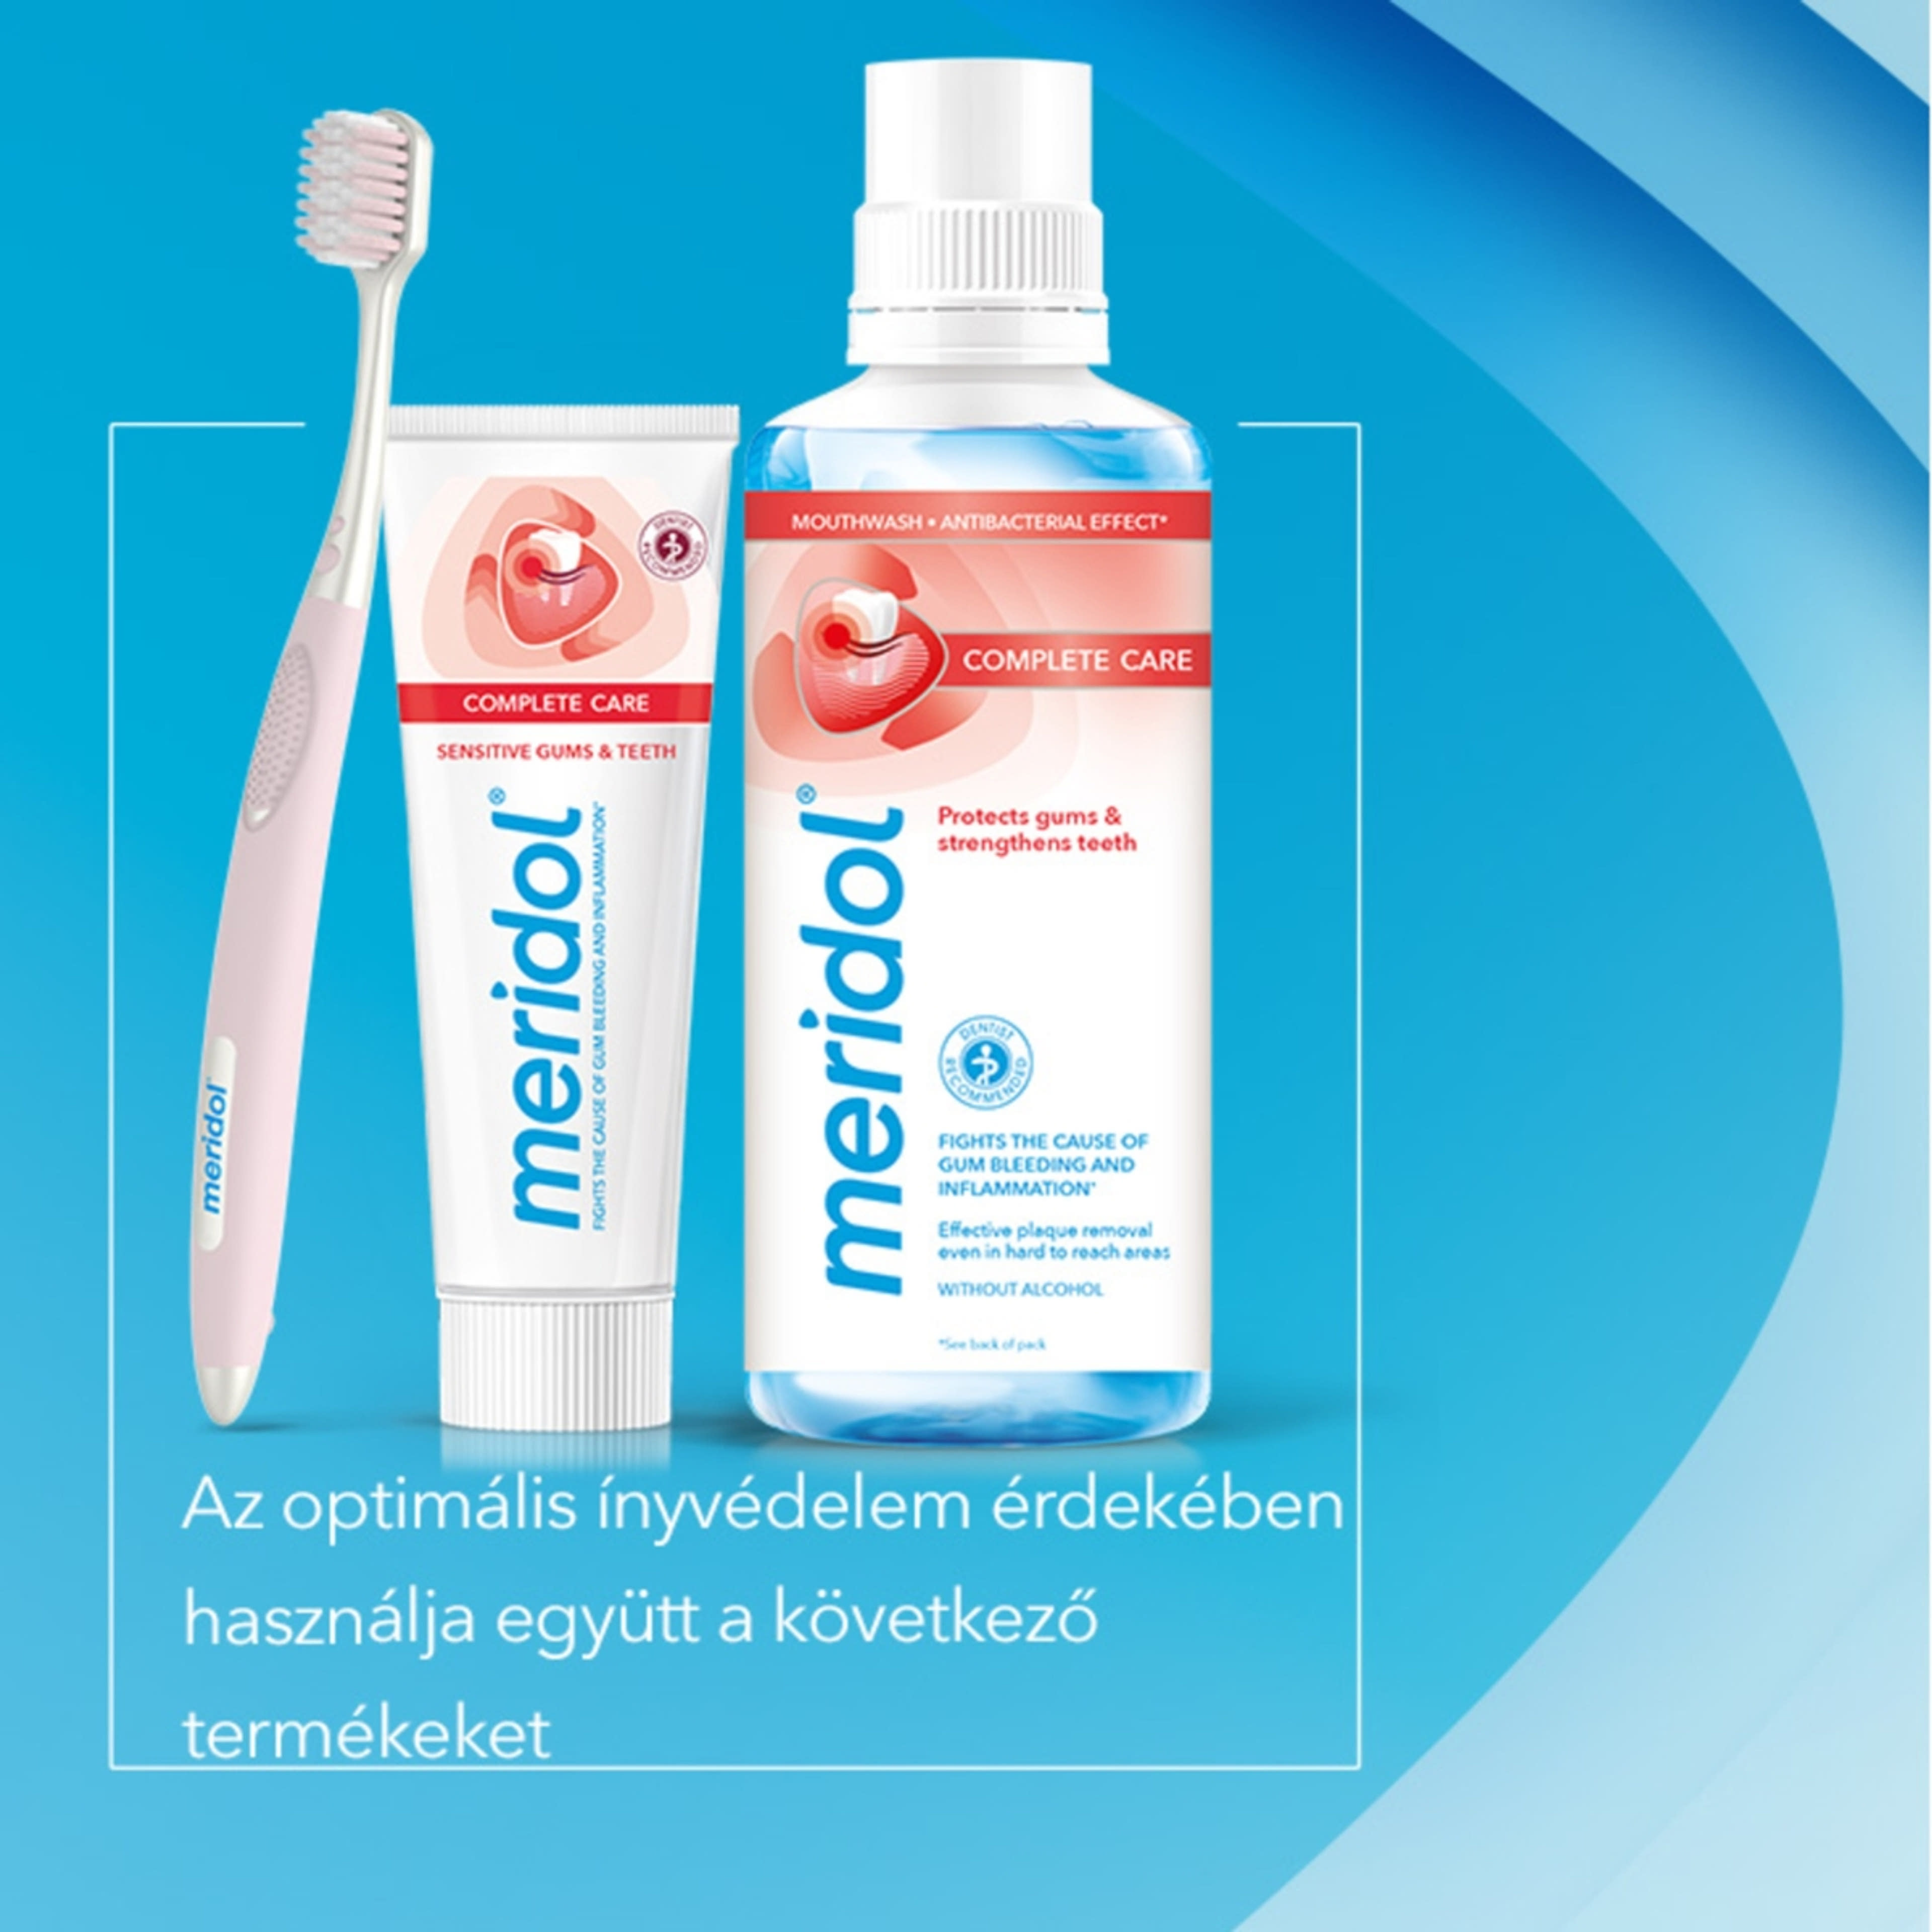 Meridol Complete Care fogkrém érzékeny fogíny és fogak védelmére - 75 ml-9